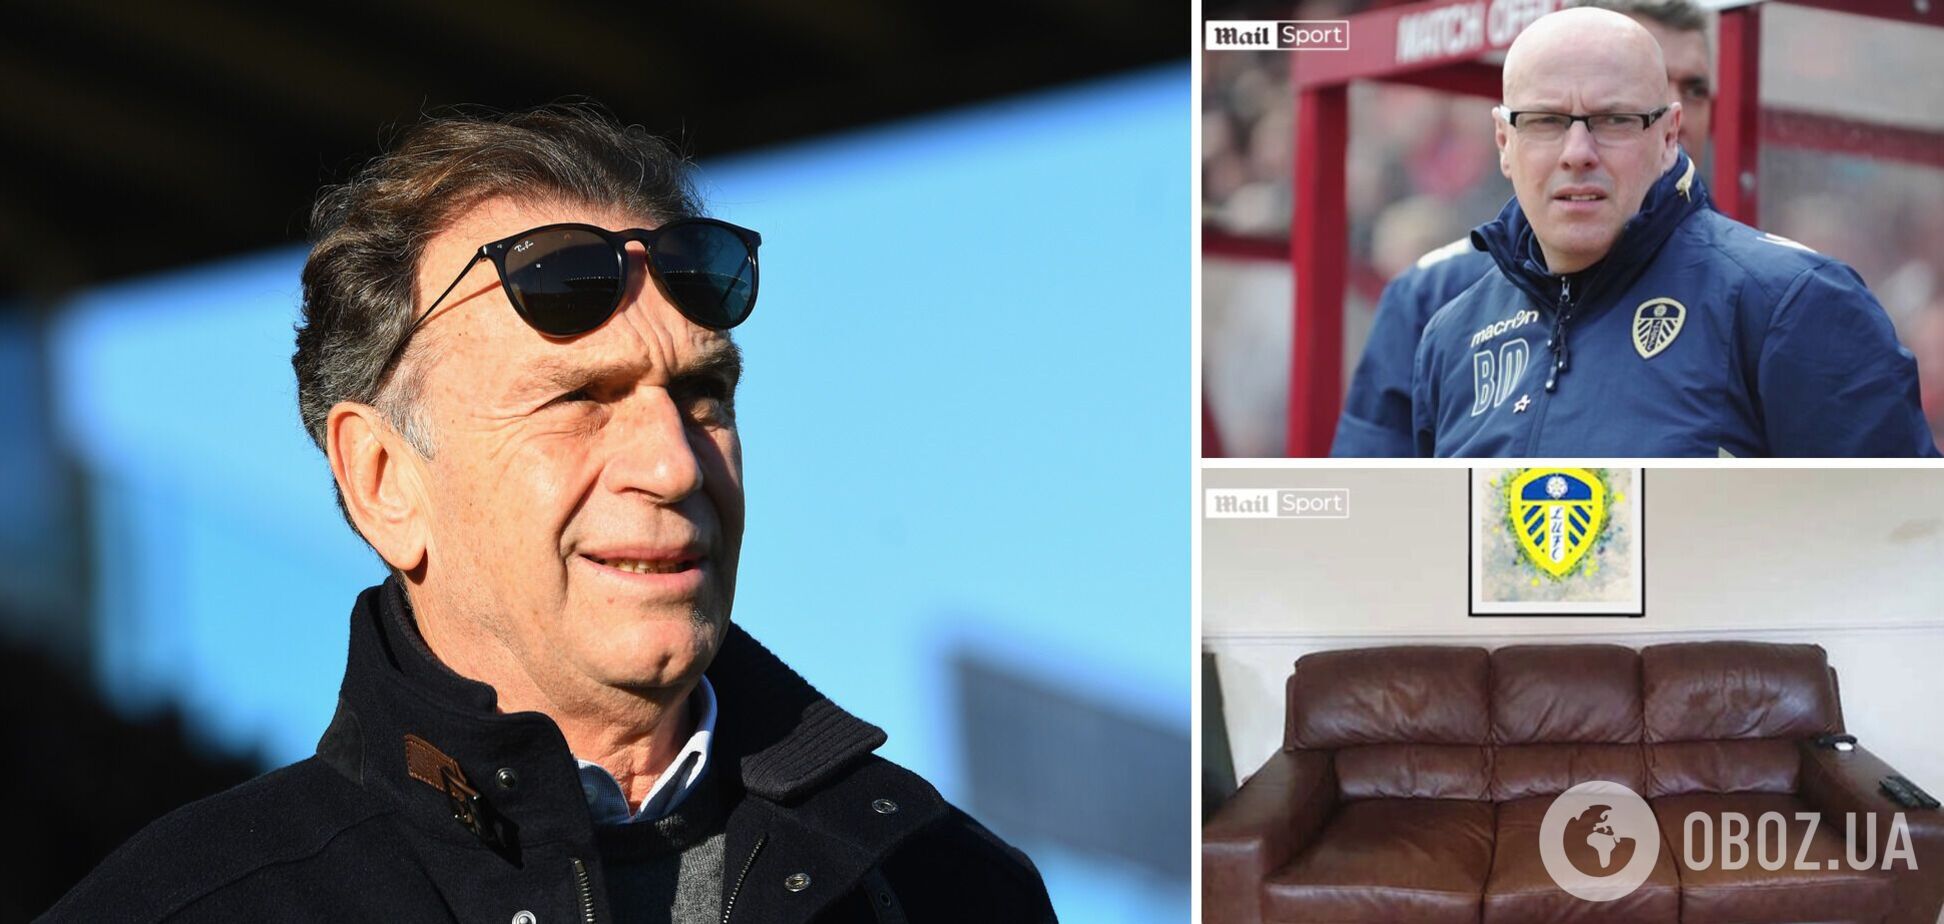 Владелец известного клуба из Англии вместо выкинуть диван случайно уволил главного тренера